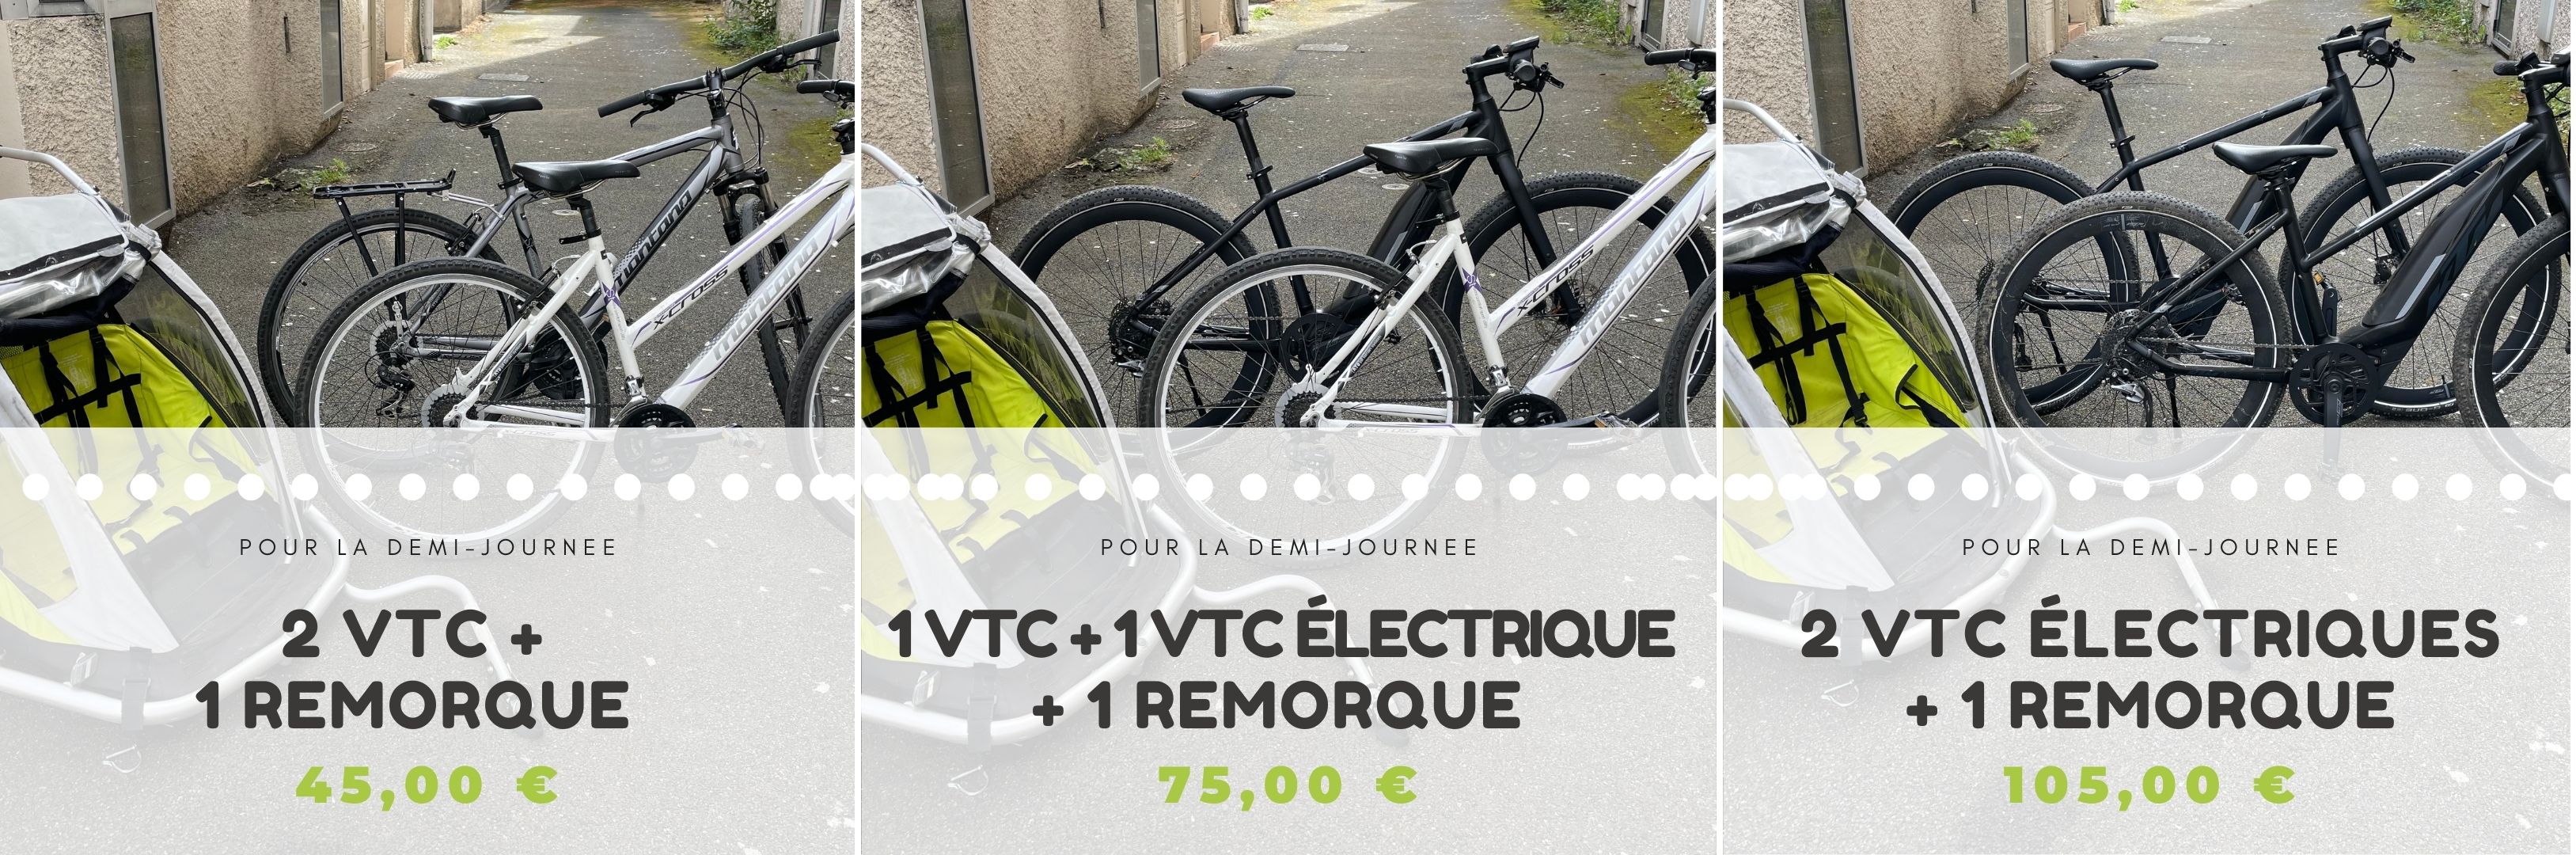 VTT, VTC et vélo électrique et remorque